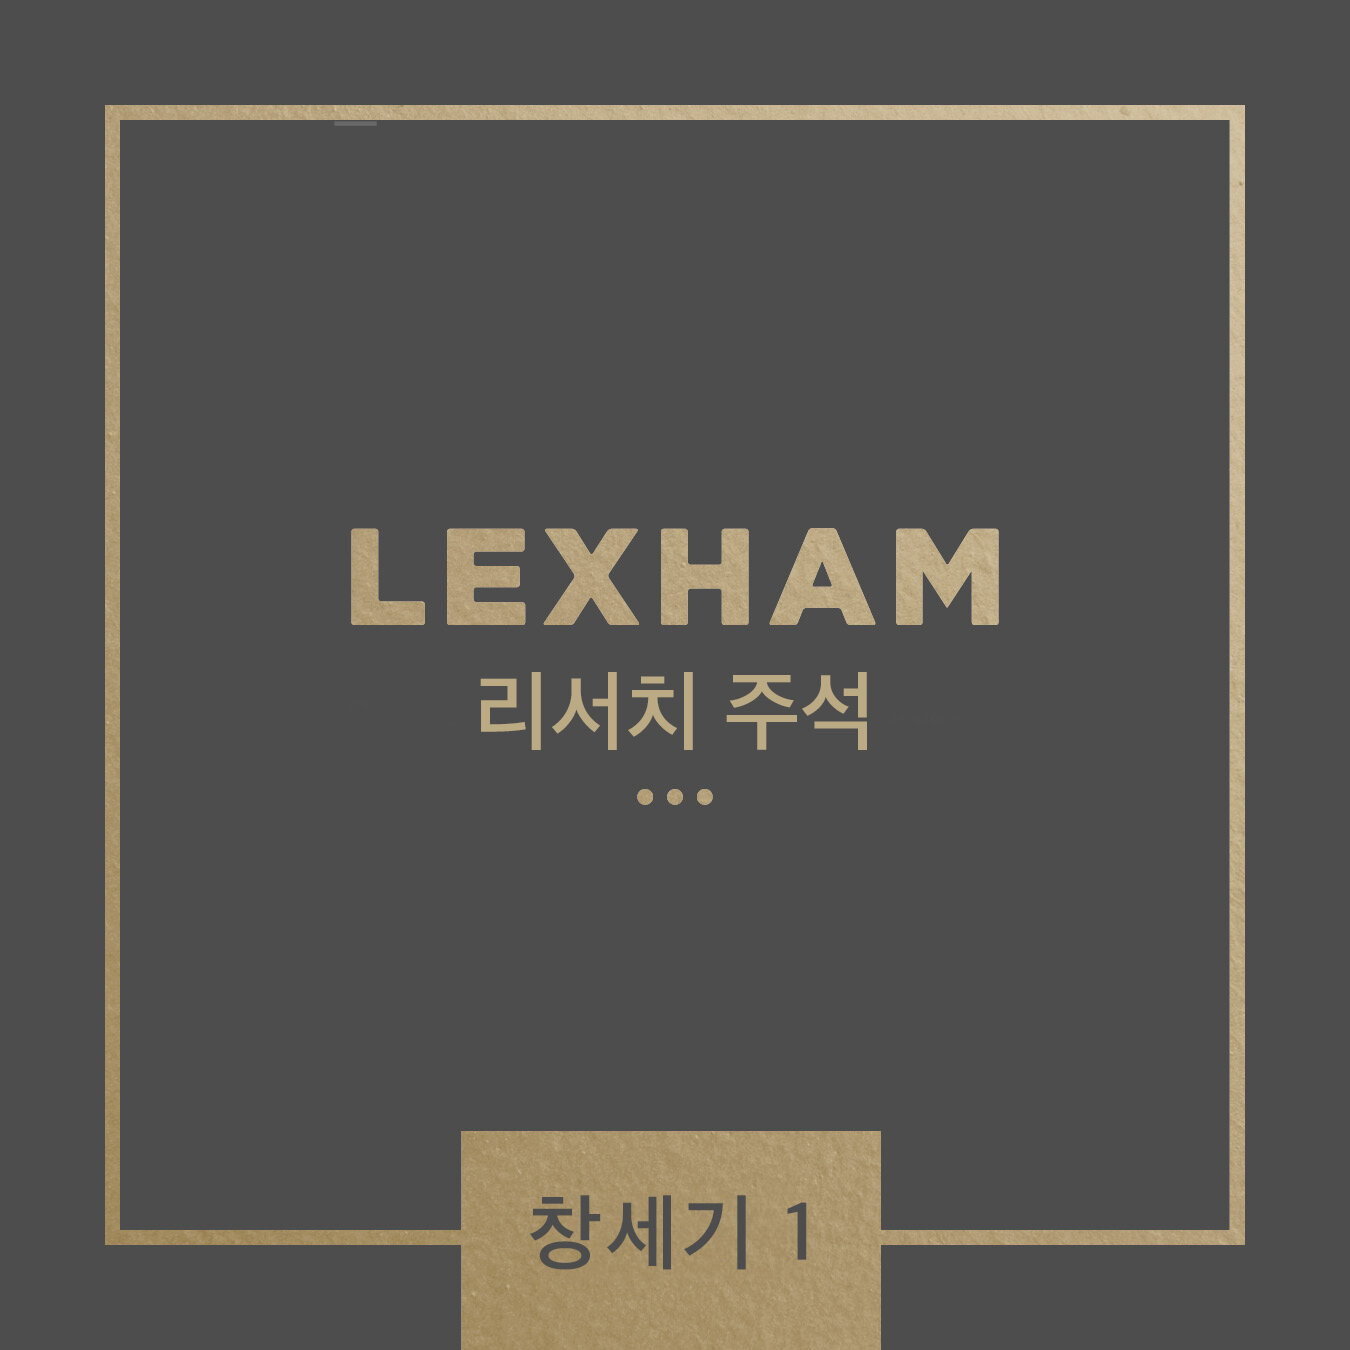 Lexham 리서치 주석: 창세기 1-11장